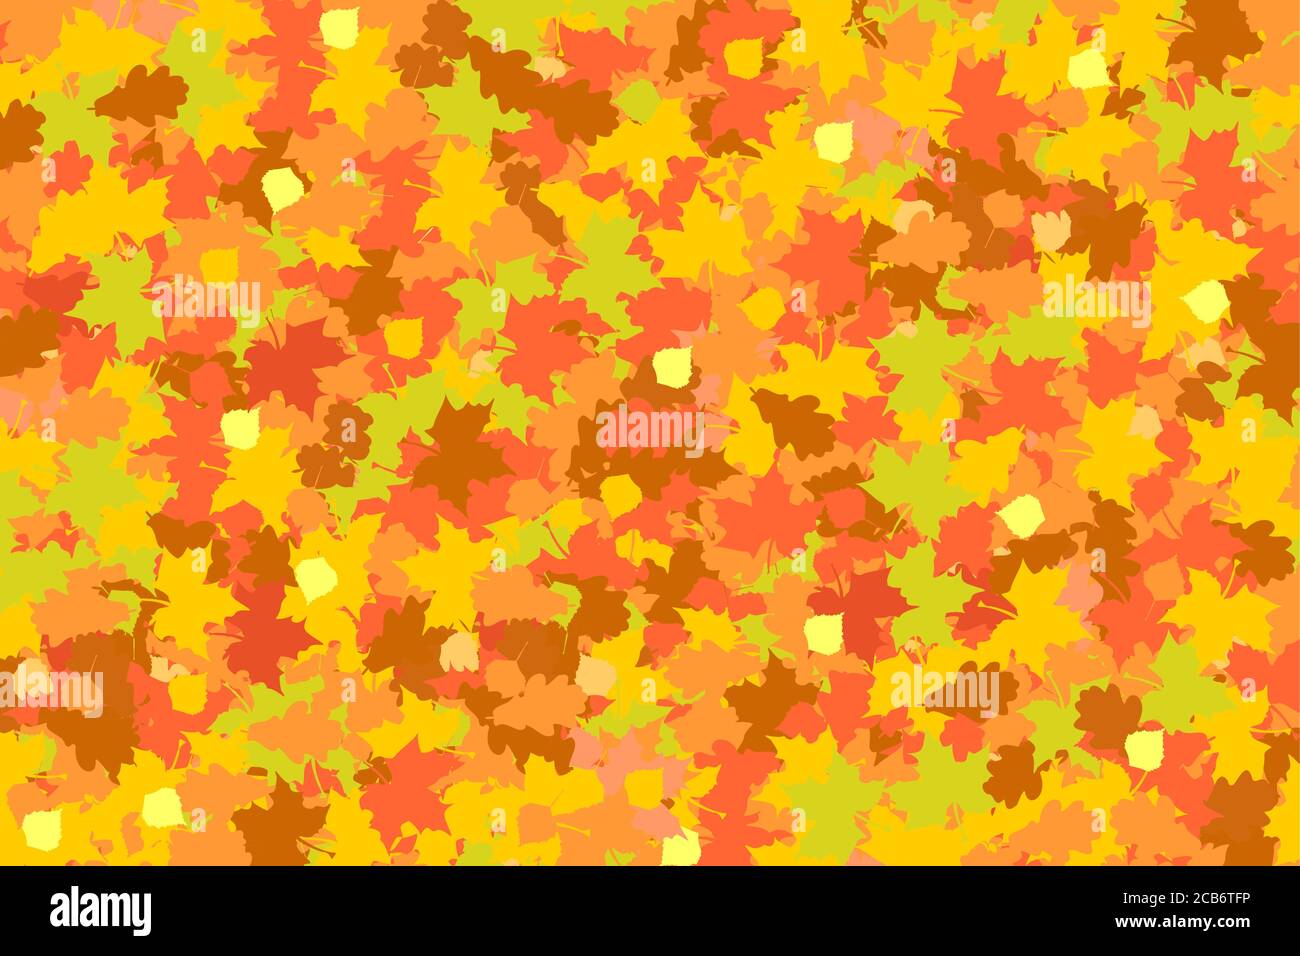 sfondo autunnale di foglie cadenti di acero, quercia e betulla nei colori giallo-rosso-arancio Illustrazione Vettoriale